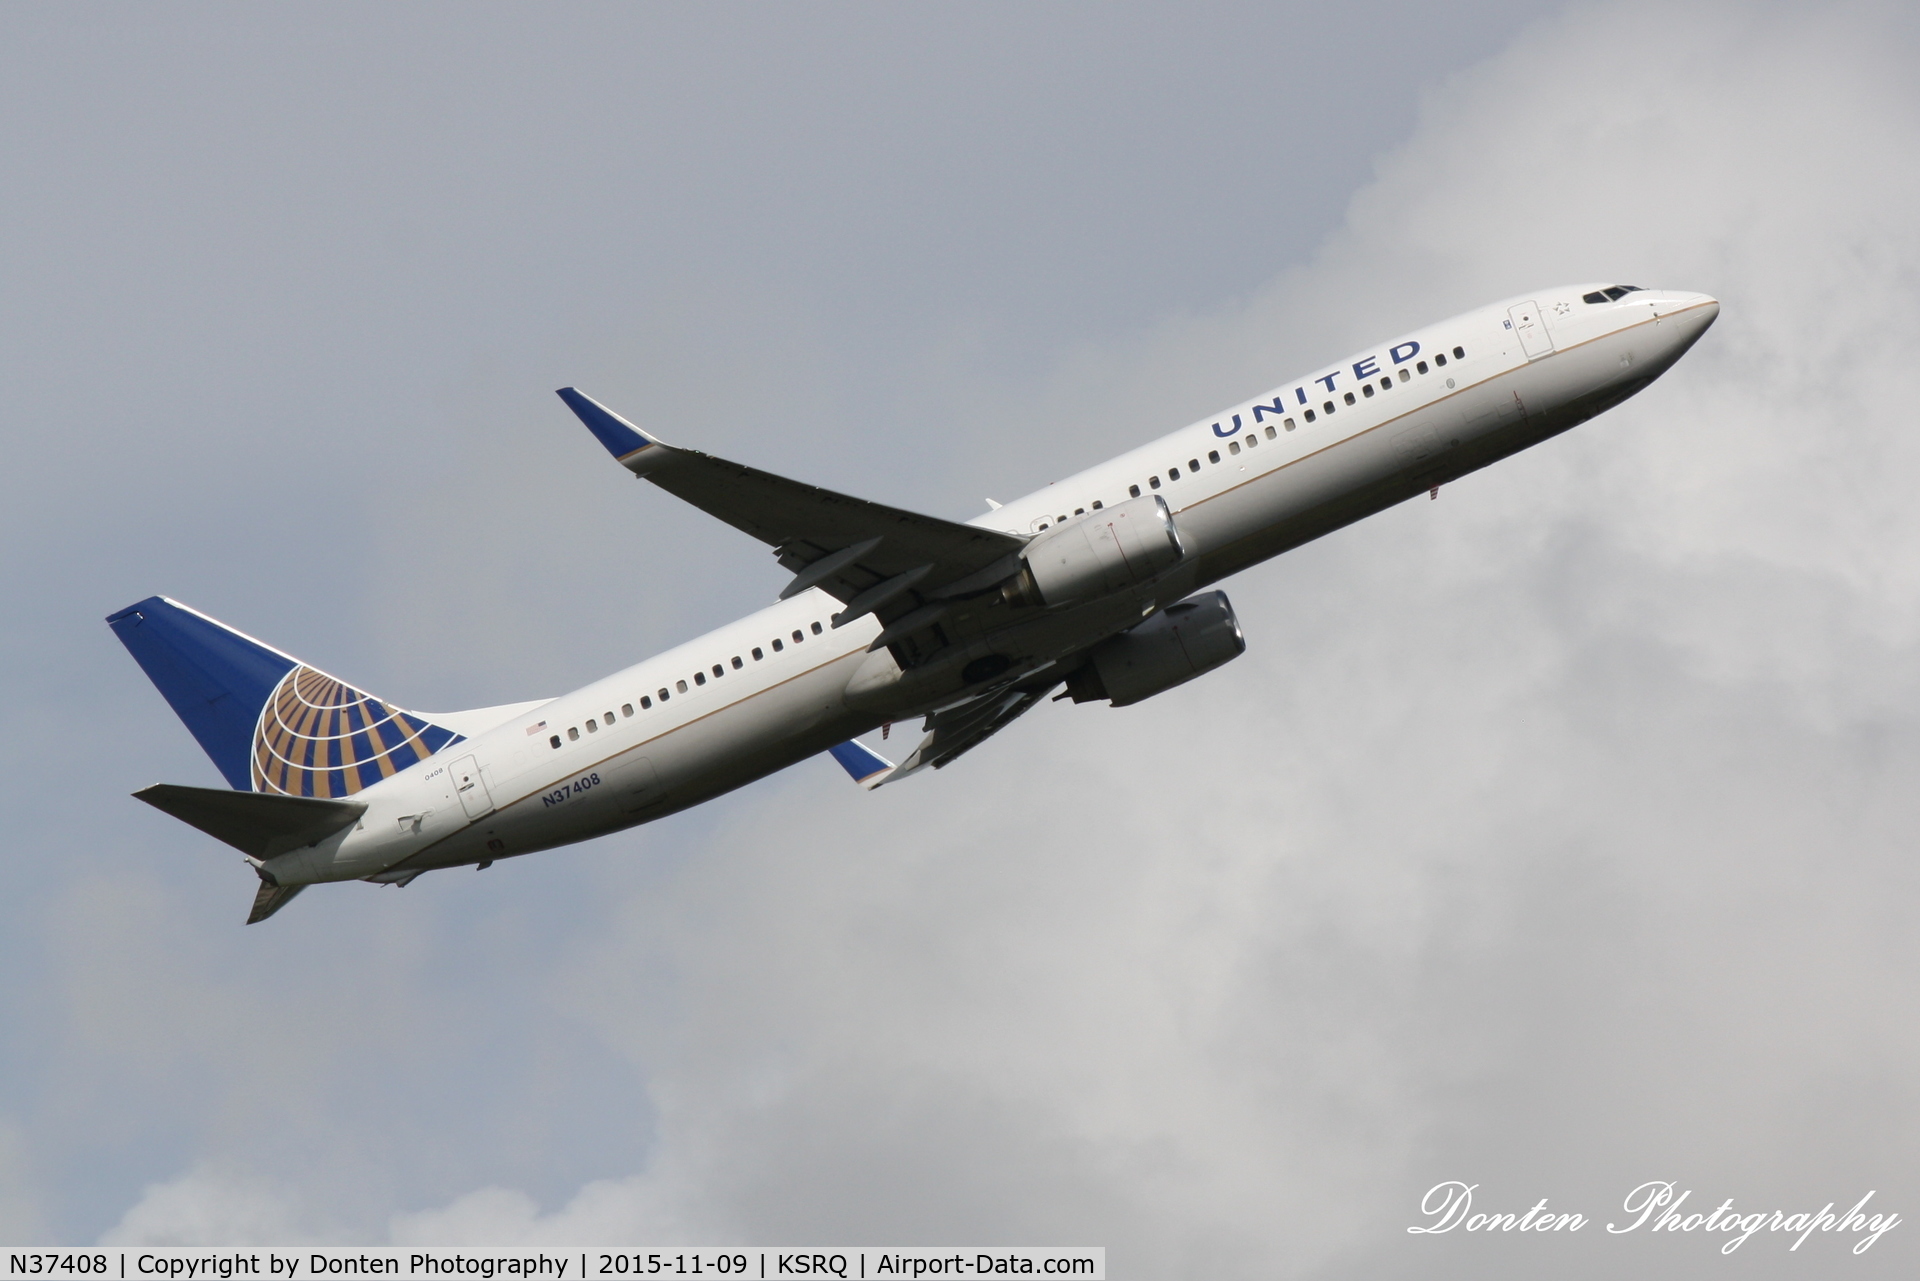 N37408, 2001 Boeing 737-924 C/N 30125, United Flight 1641 (N37408) departs Sarasota-Bradenton International Airport enroute to Chicago-O'Hare International Airport